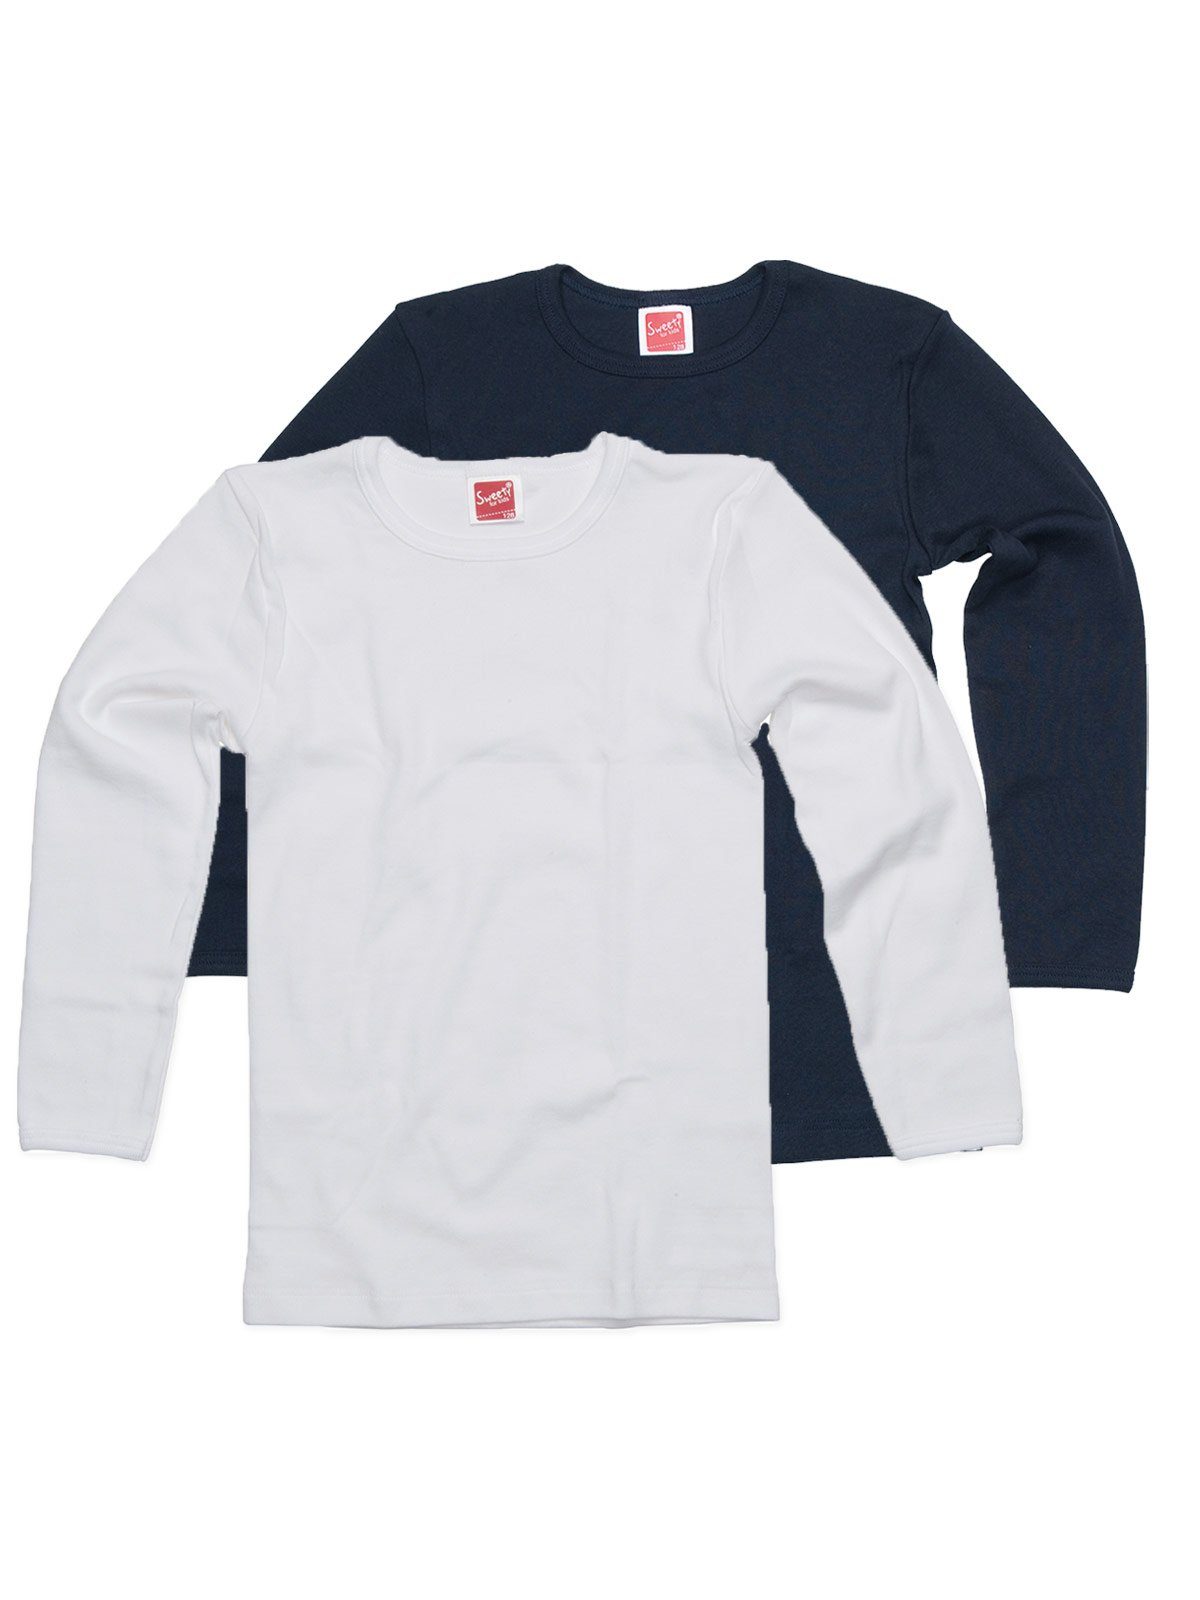 Sweety for Kids Achselhemd 2er Sparpack Kinder Shirt Winterwäsche (Spar-Set, 2-St) hohe Markenqualität navy weiss